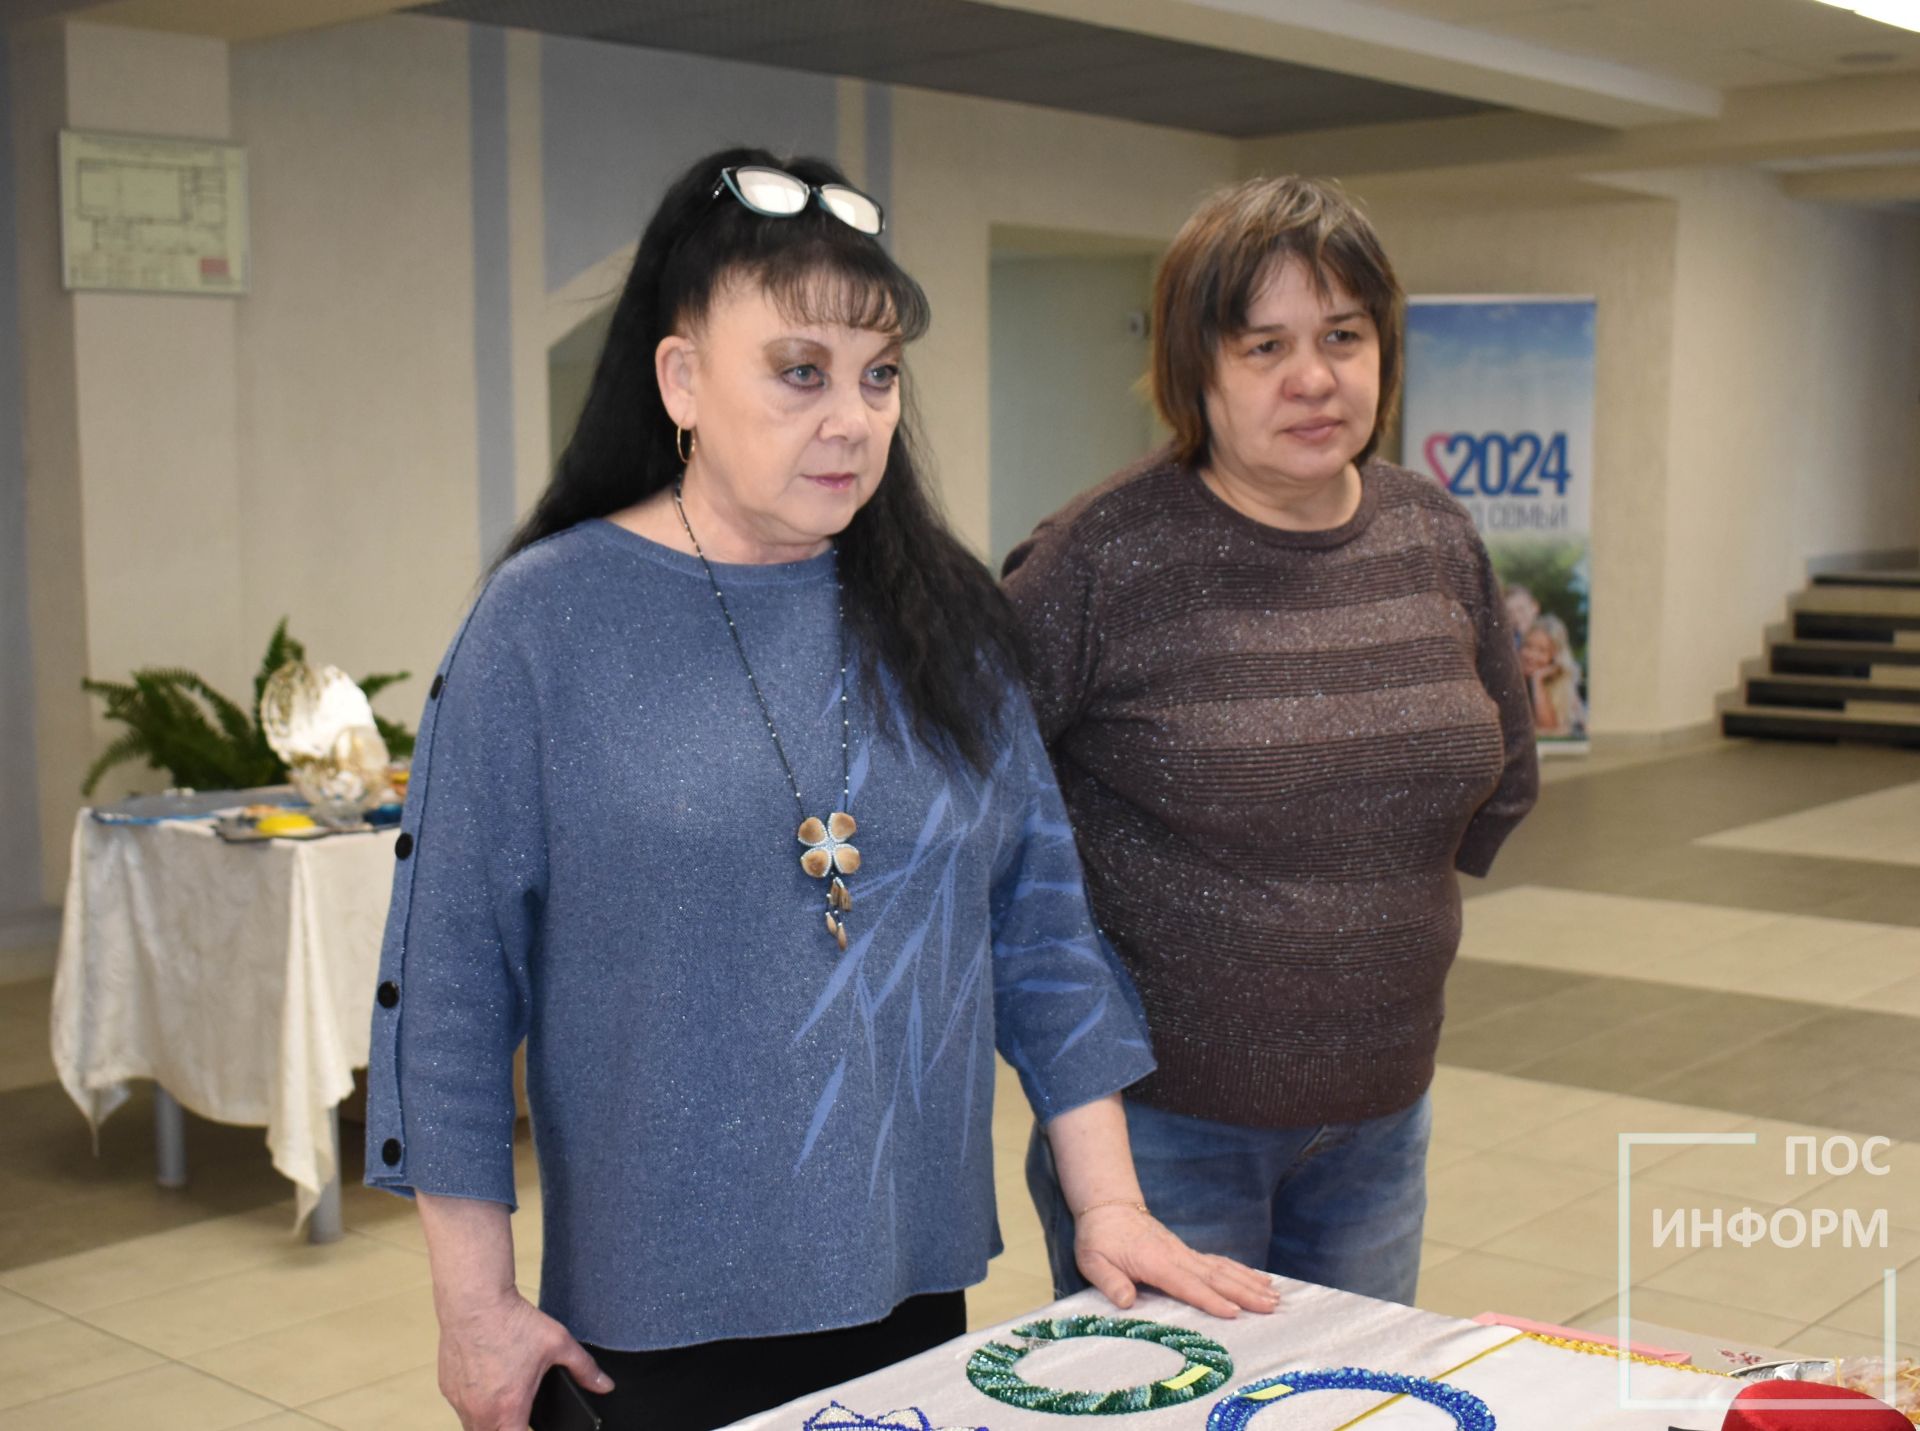 В культурном центре «Чулман-Су» состоялась благотворительная ярмарка